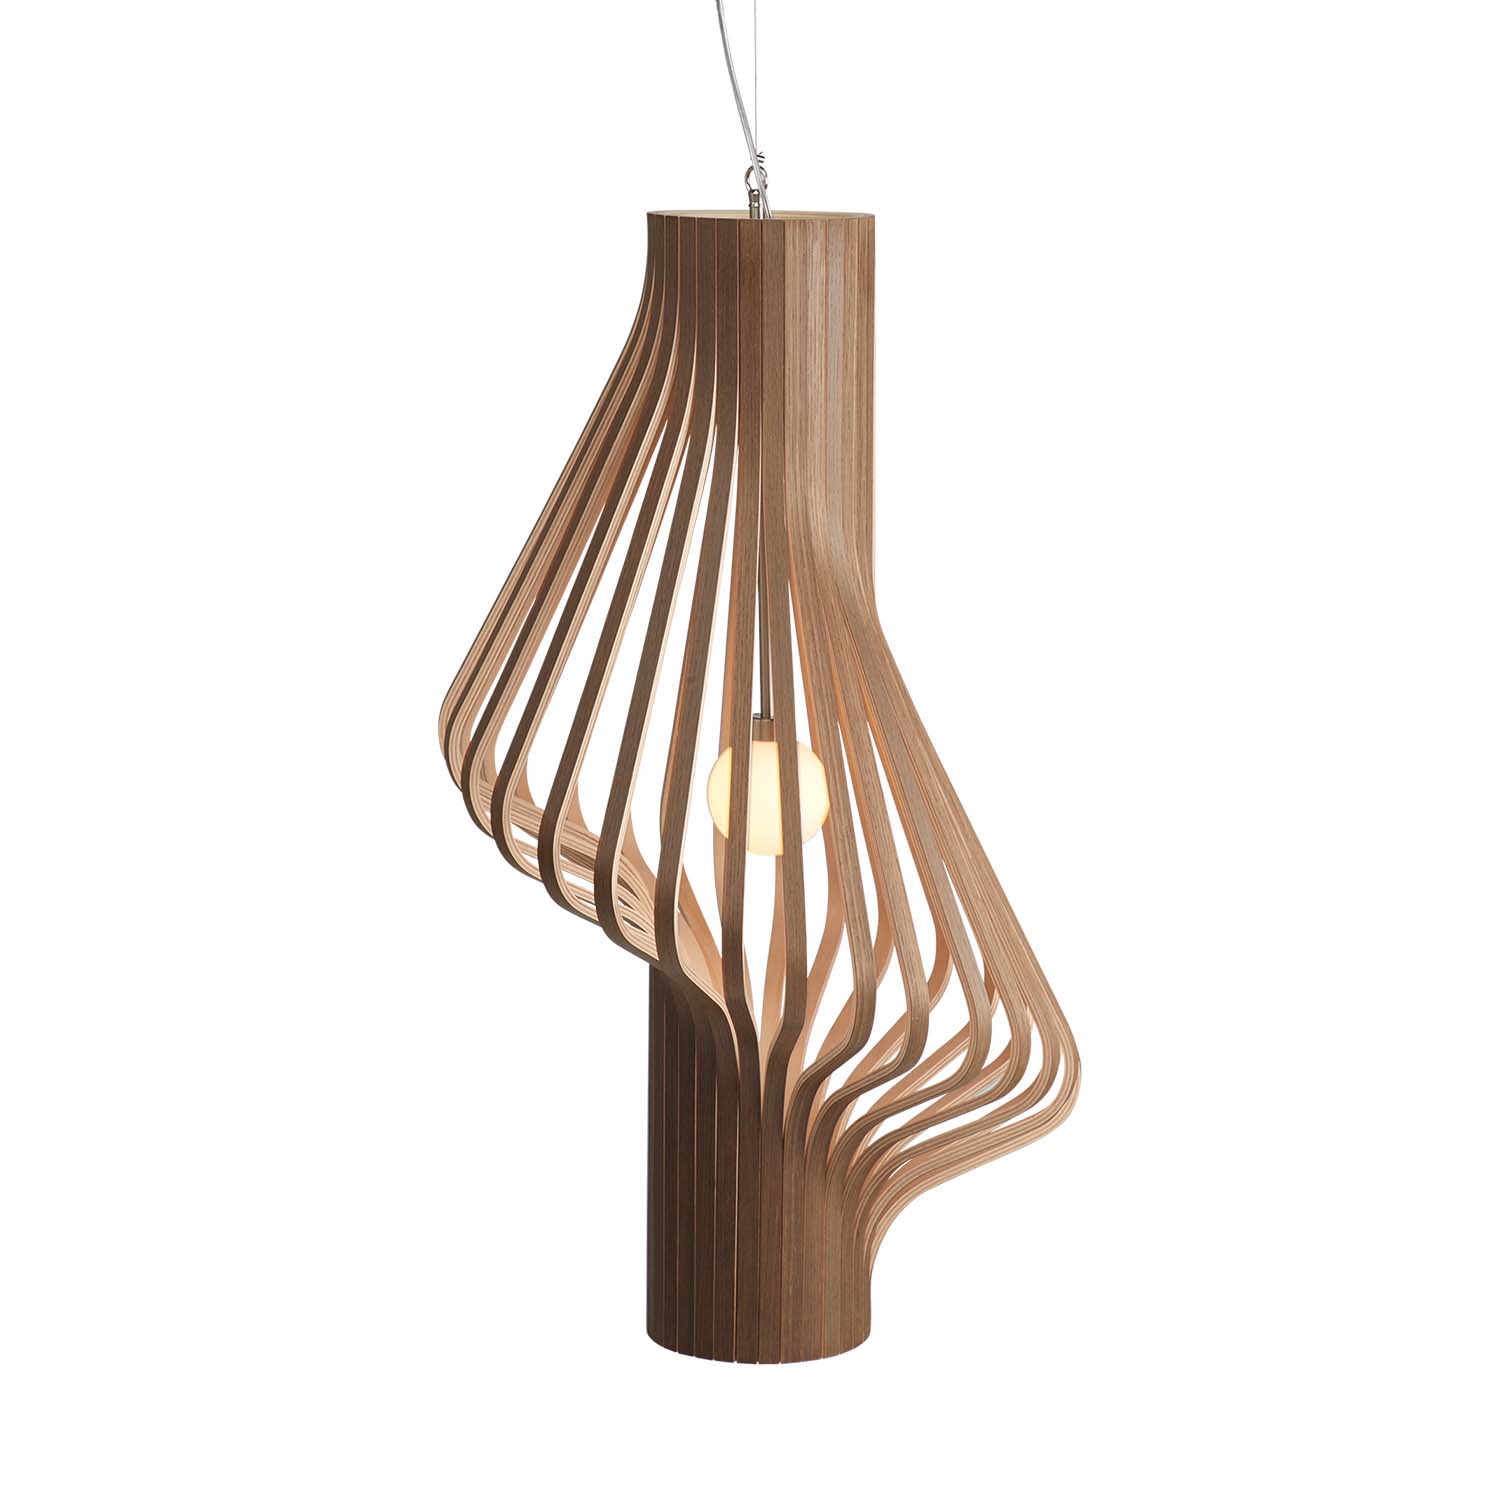 DIVA – Designer- und handwerkliche Pendelleuchte aus Holz, handgefertigt